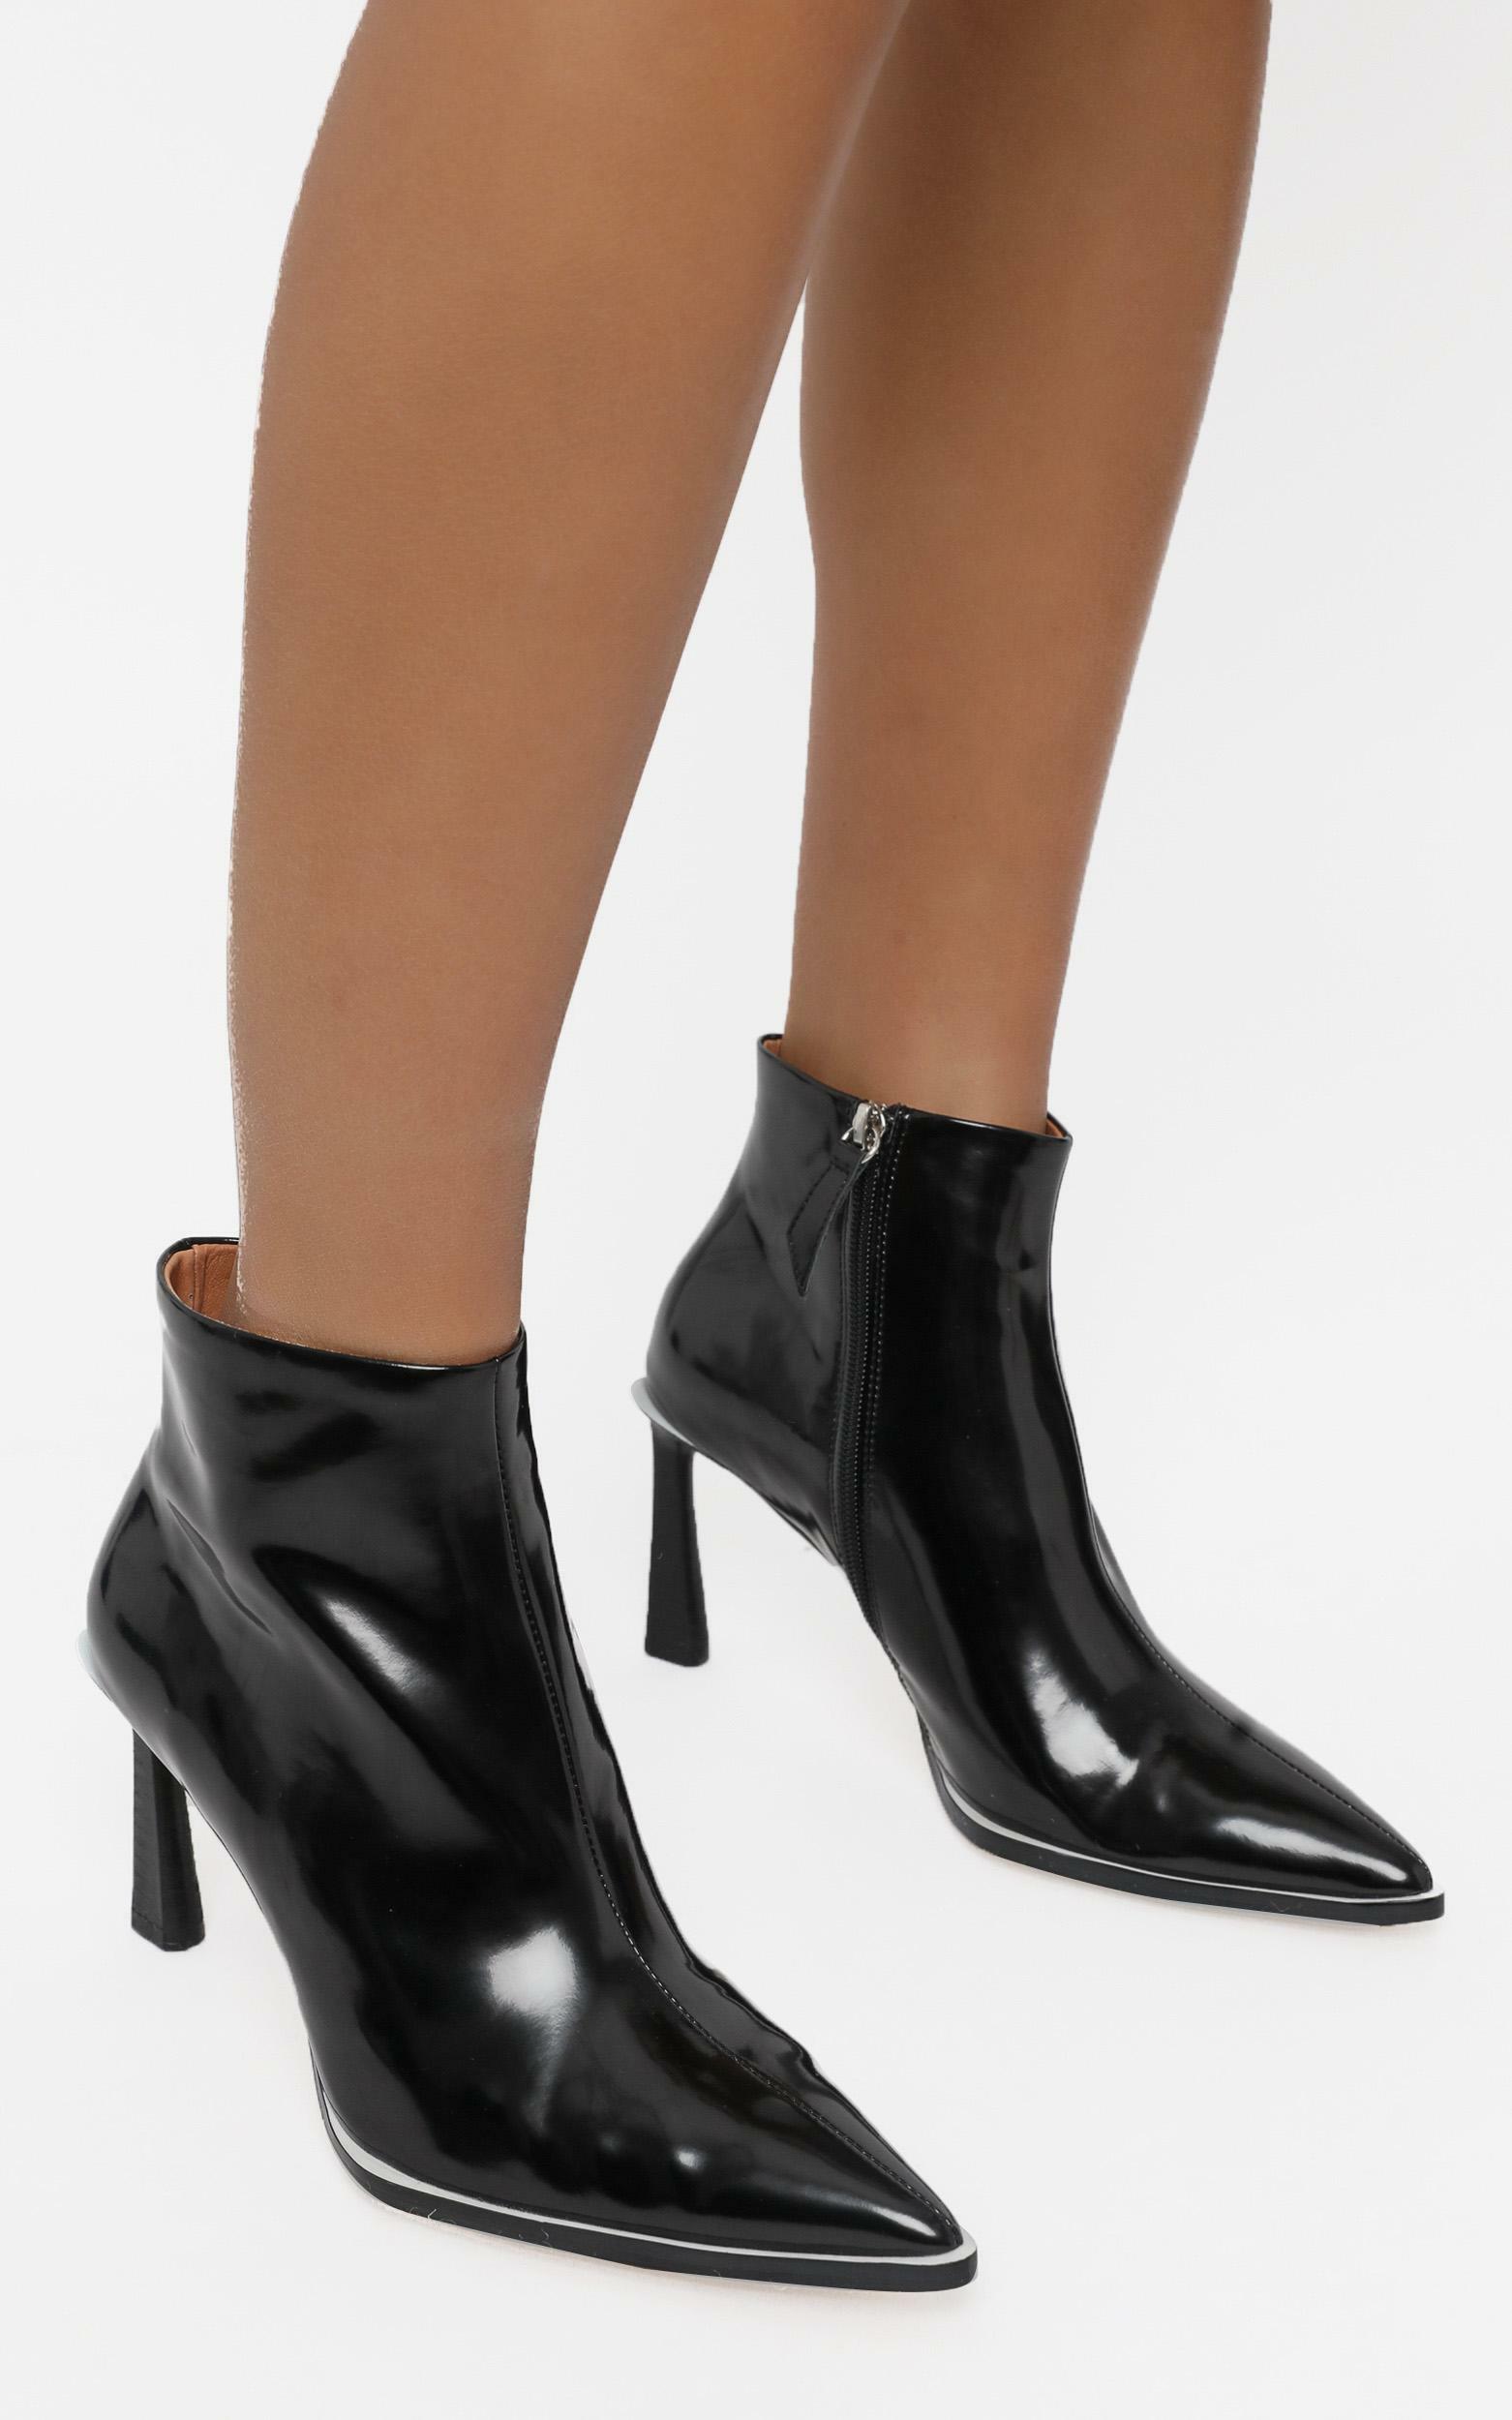 Alias Mae - Zara Boots in Black Box | Showpo